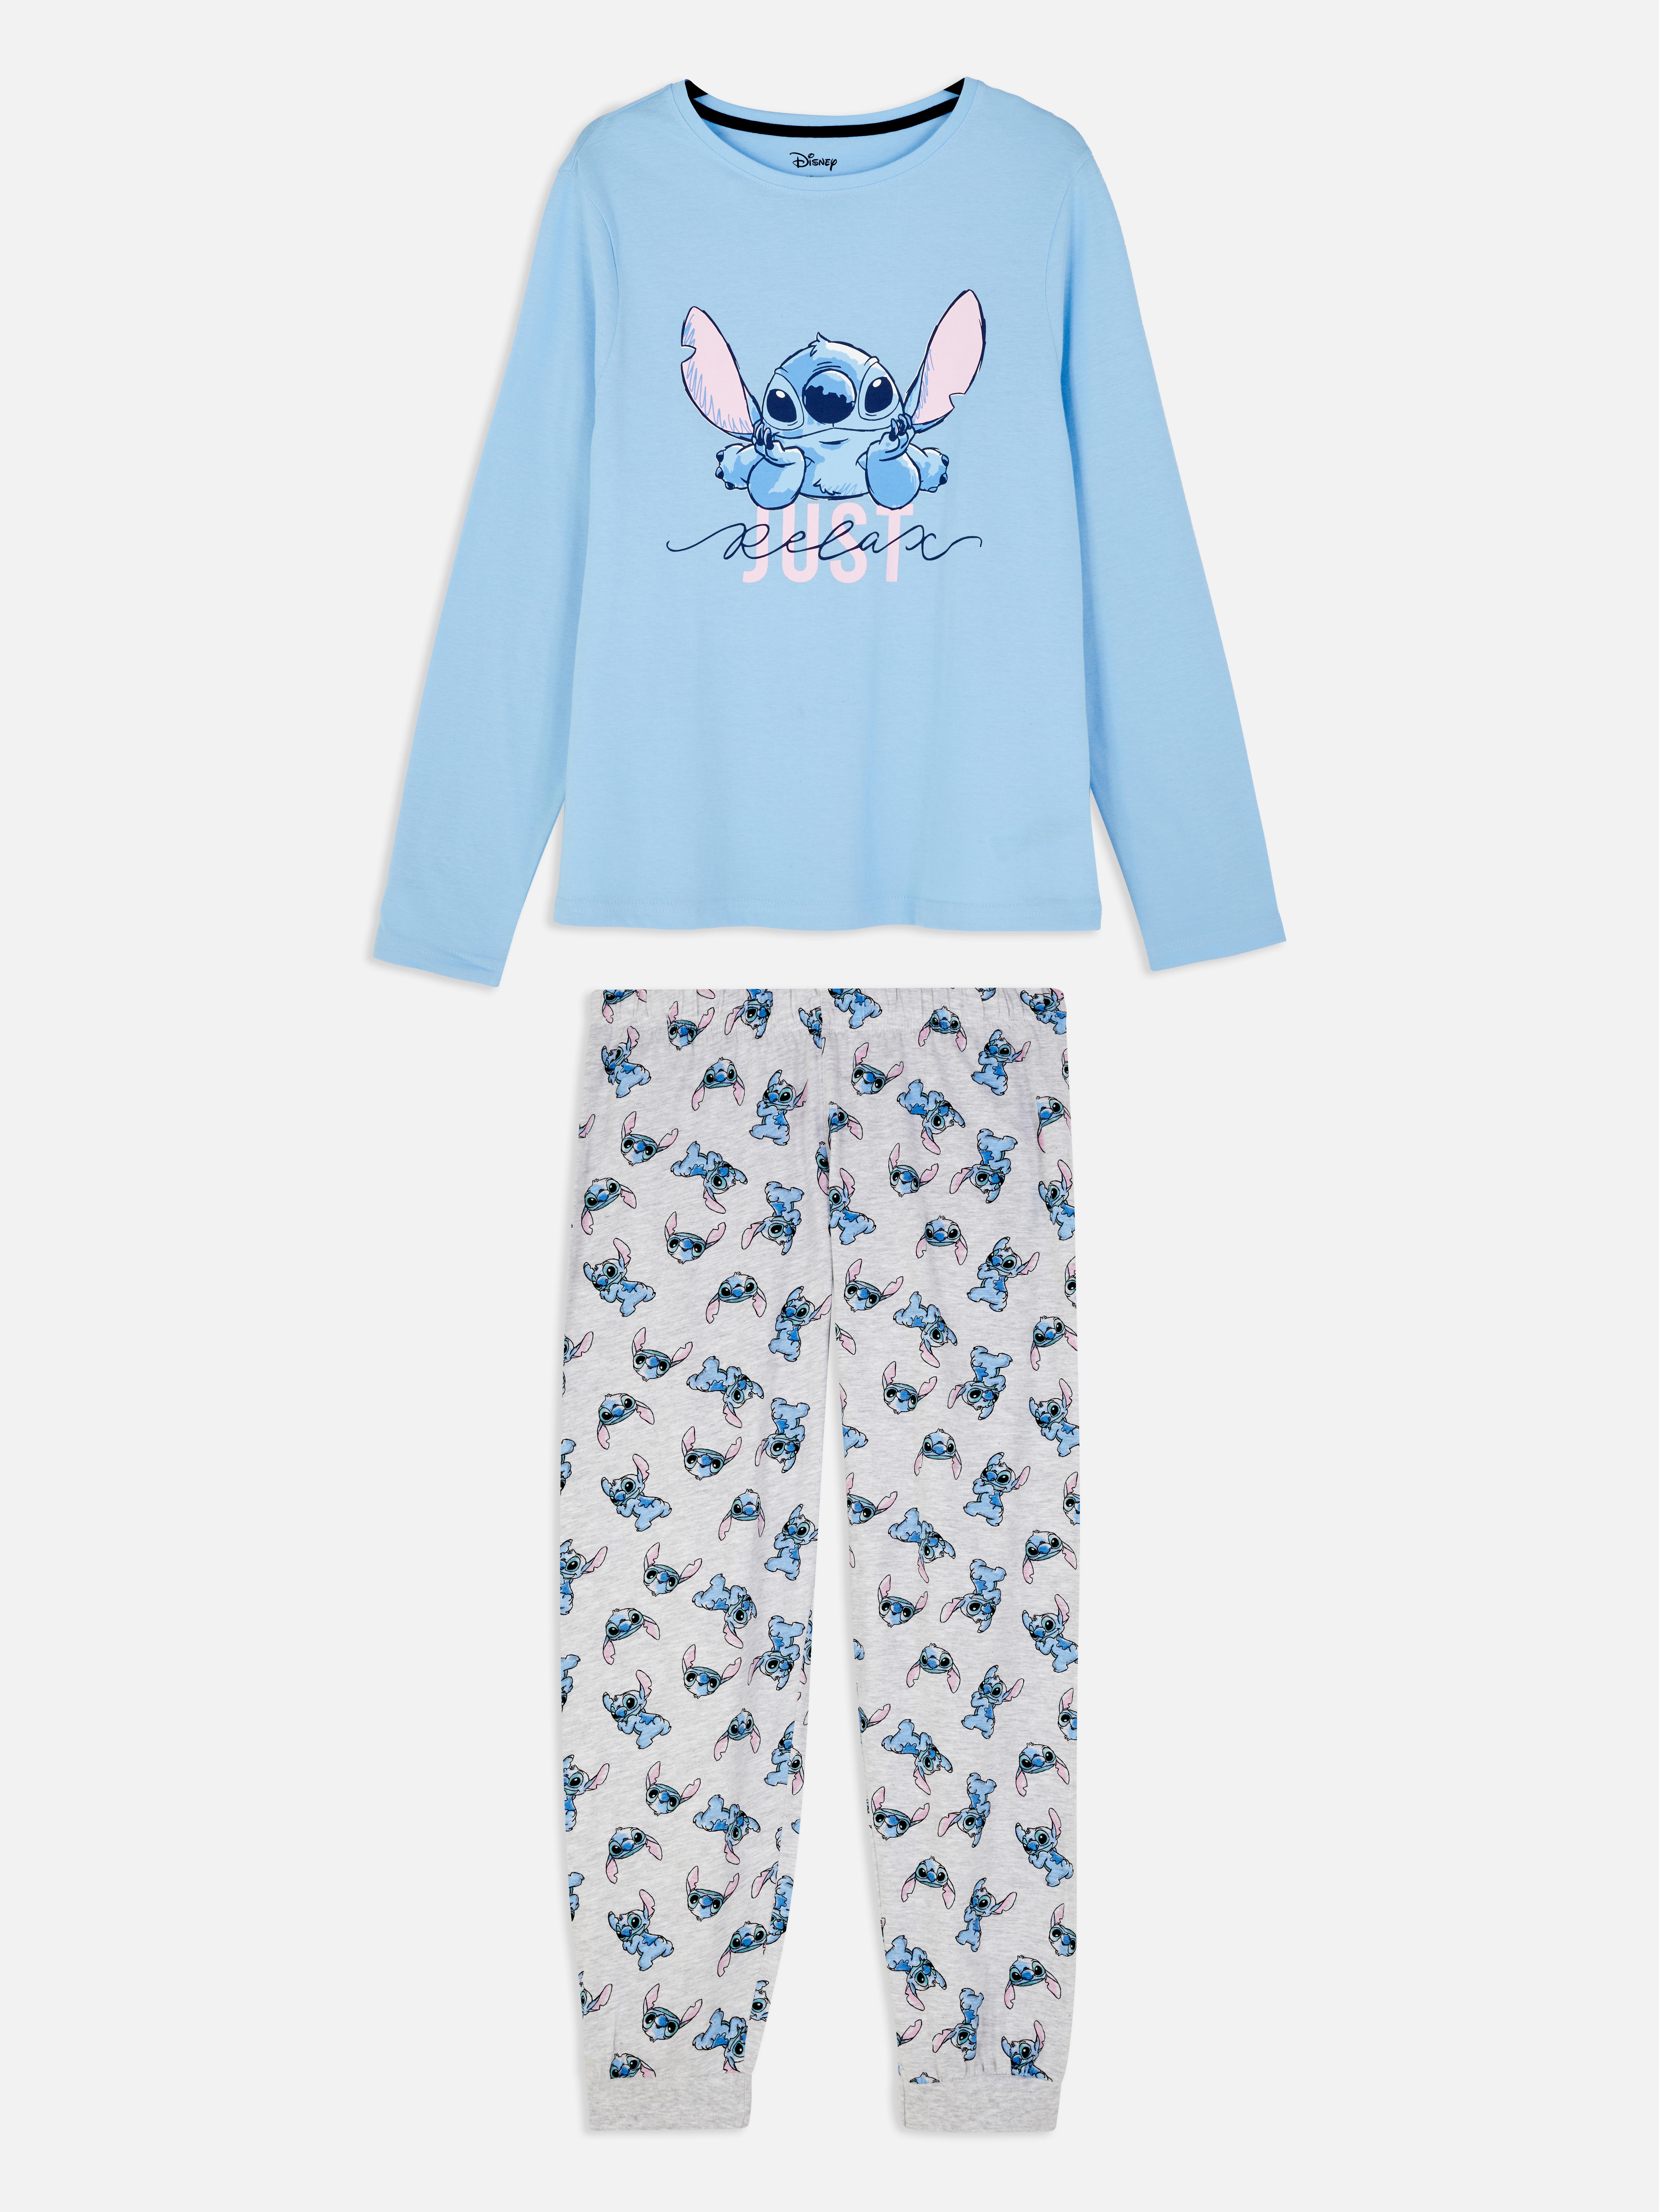 Disney's Christmas Pyjama Set